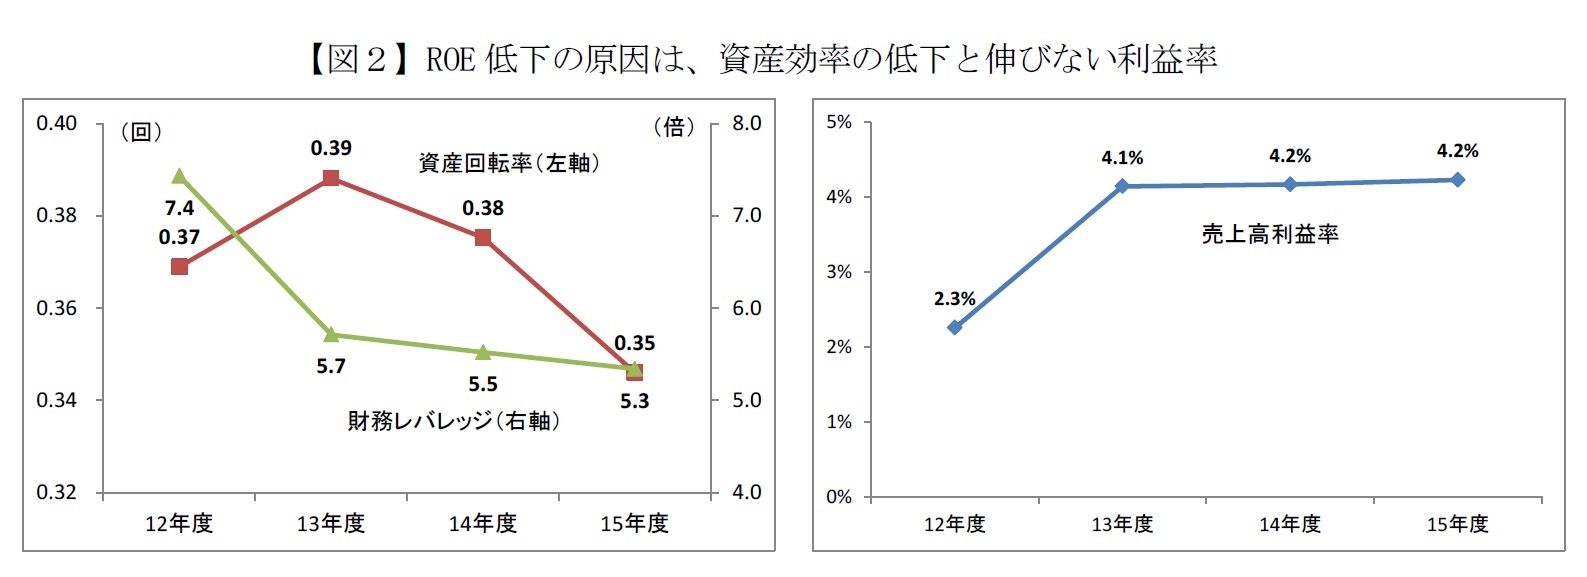 【図２】ROE低下の原因は、資産効率の低下と伸びない利益率